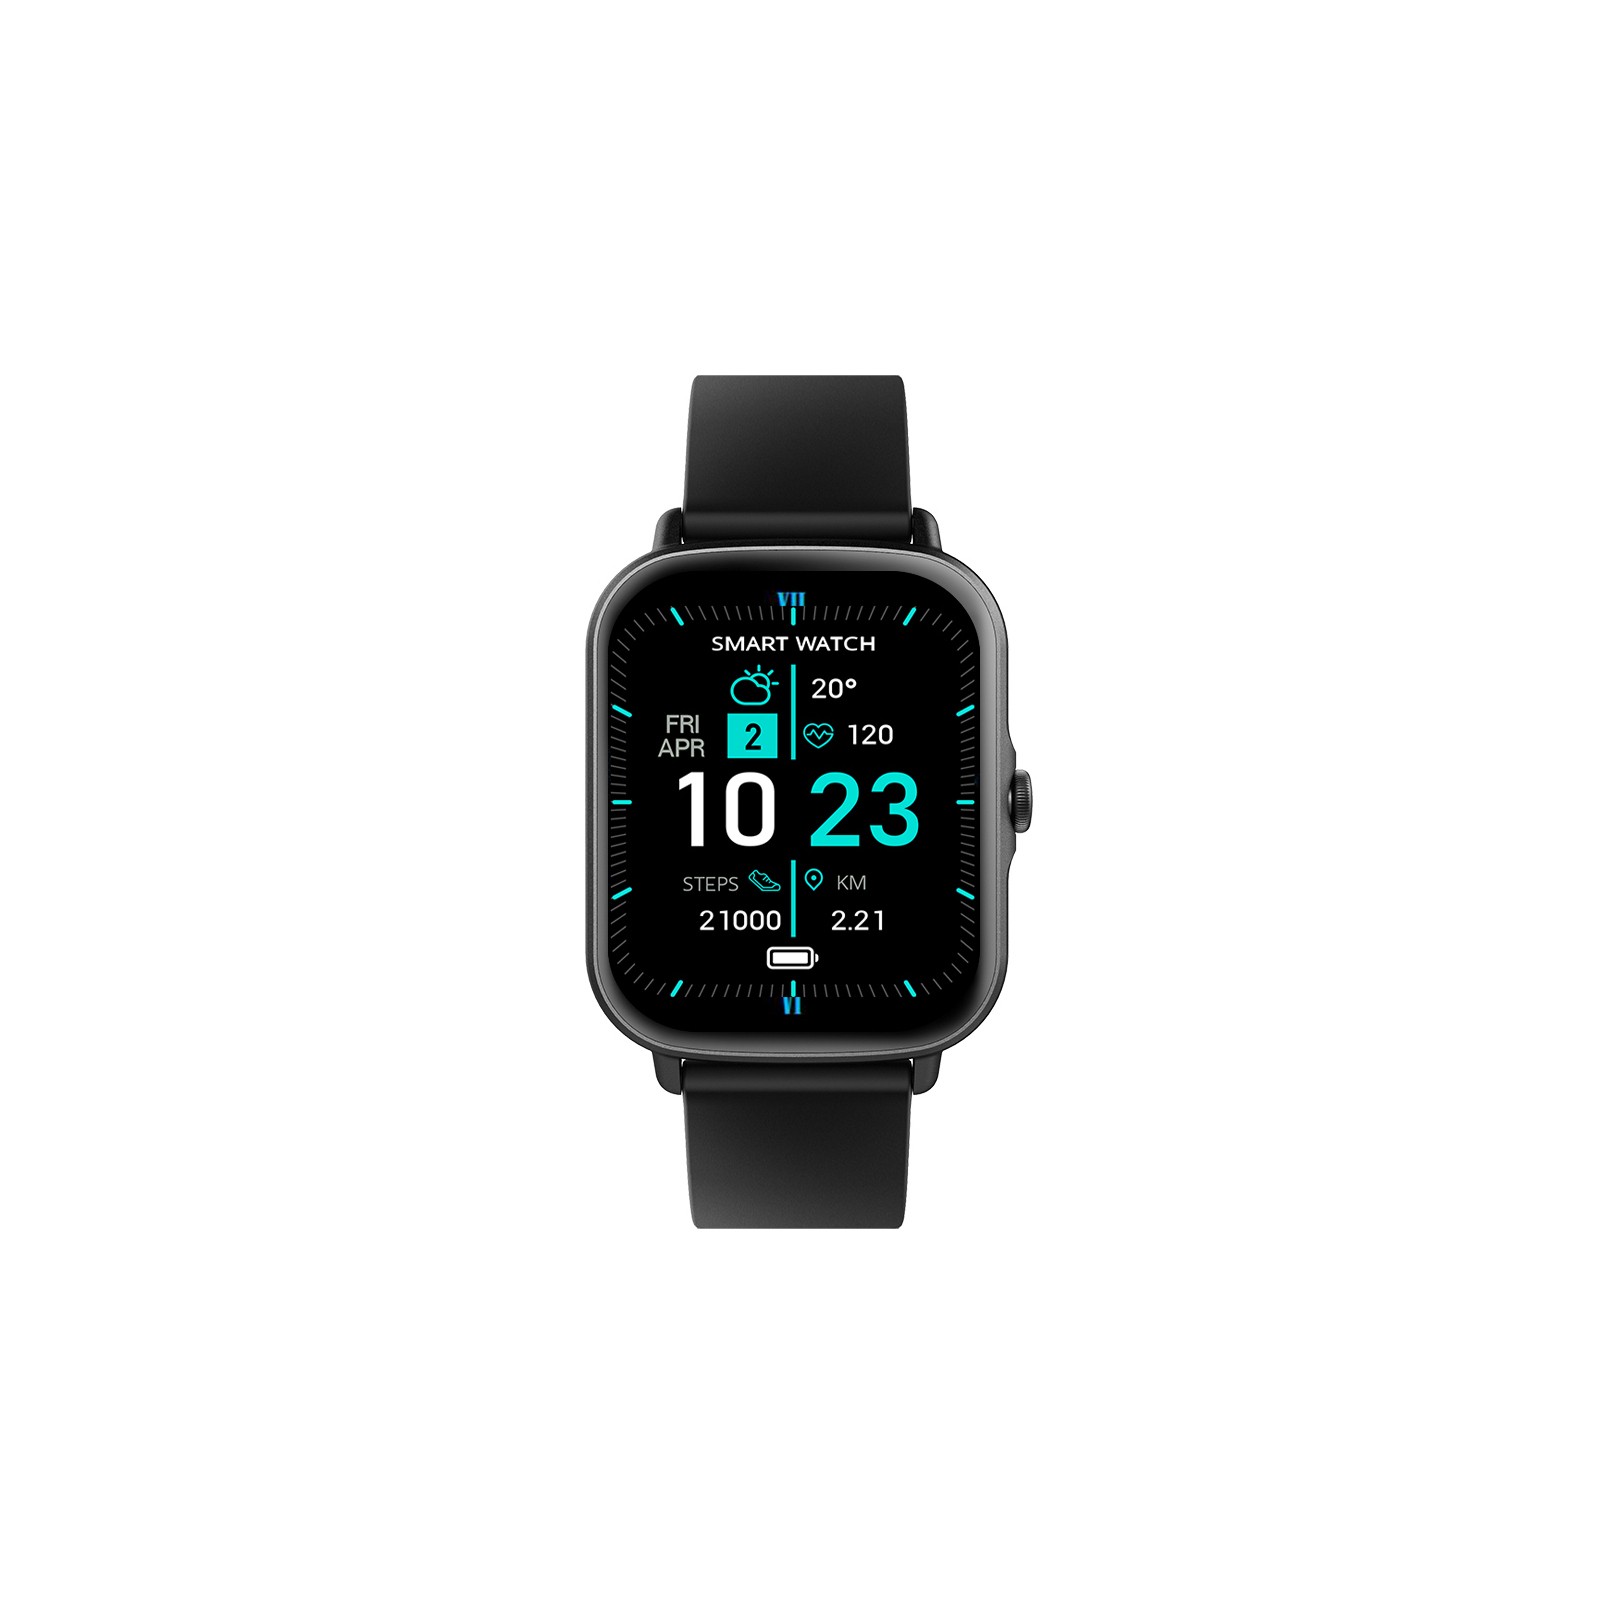 Смарт-часы Globex Smart Watch Me Pro (blue) изображение 2